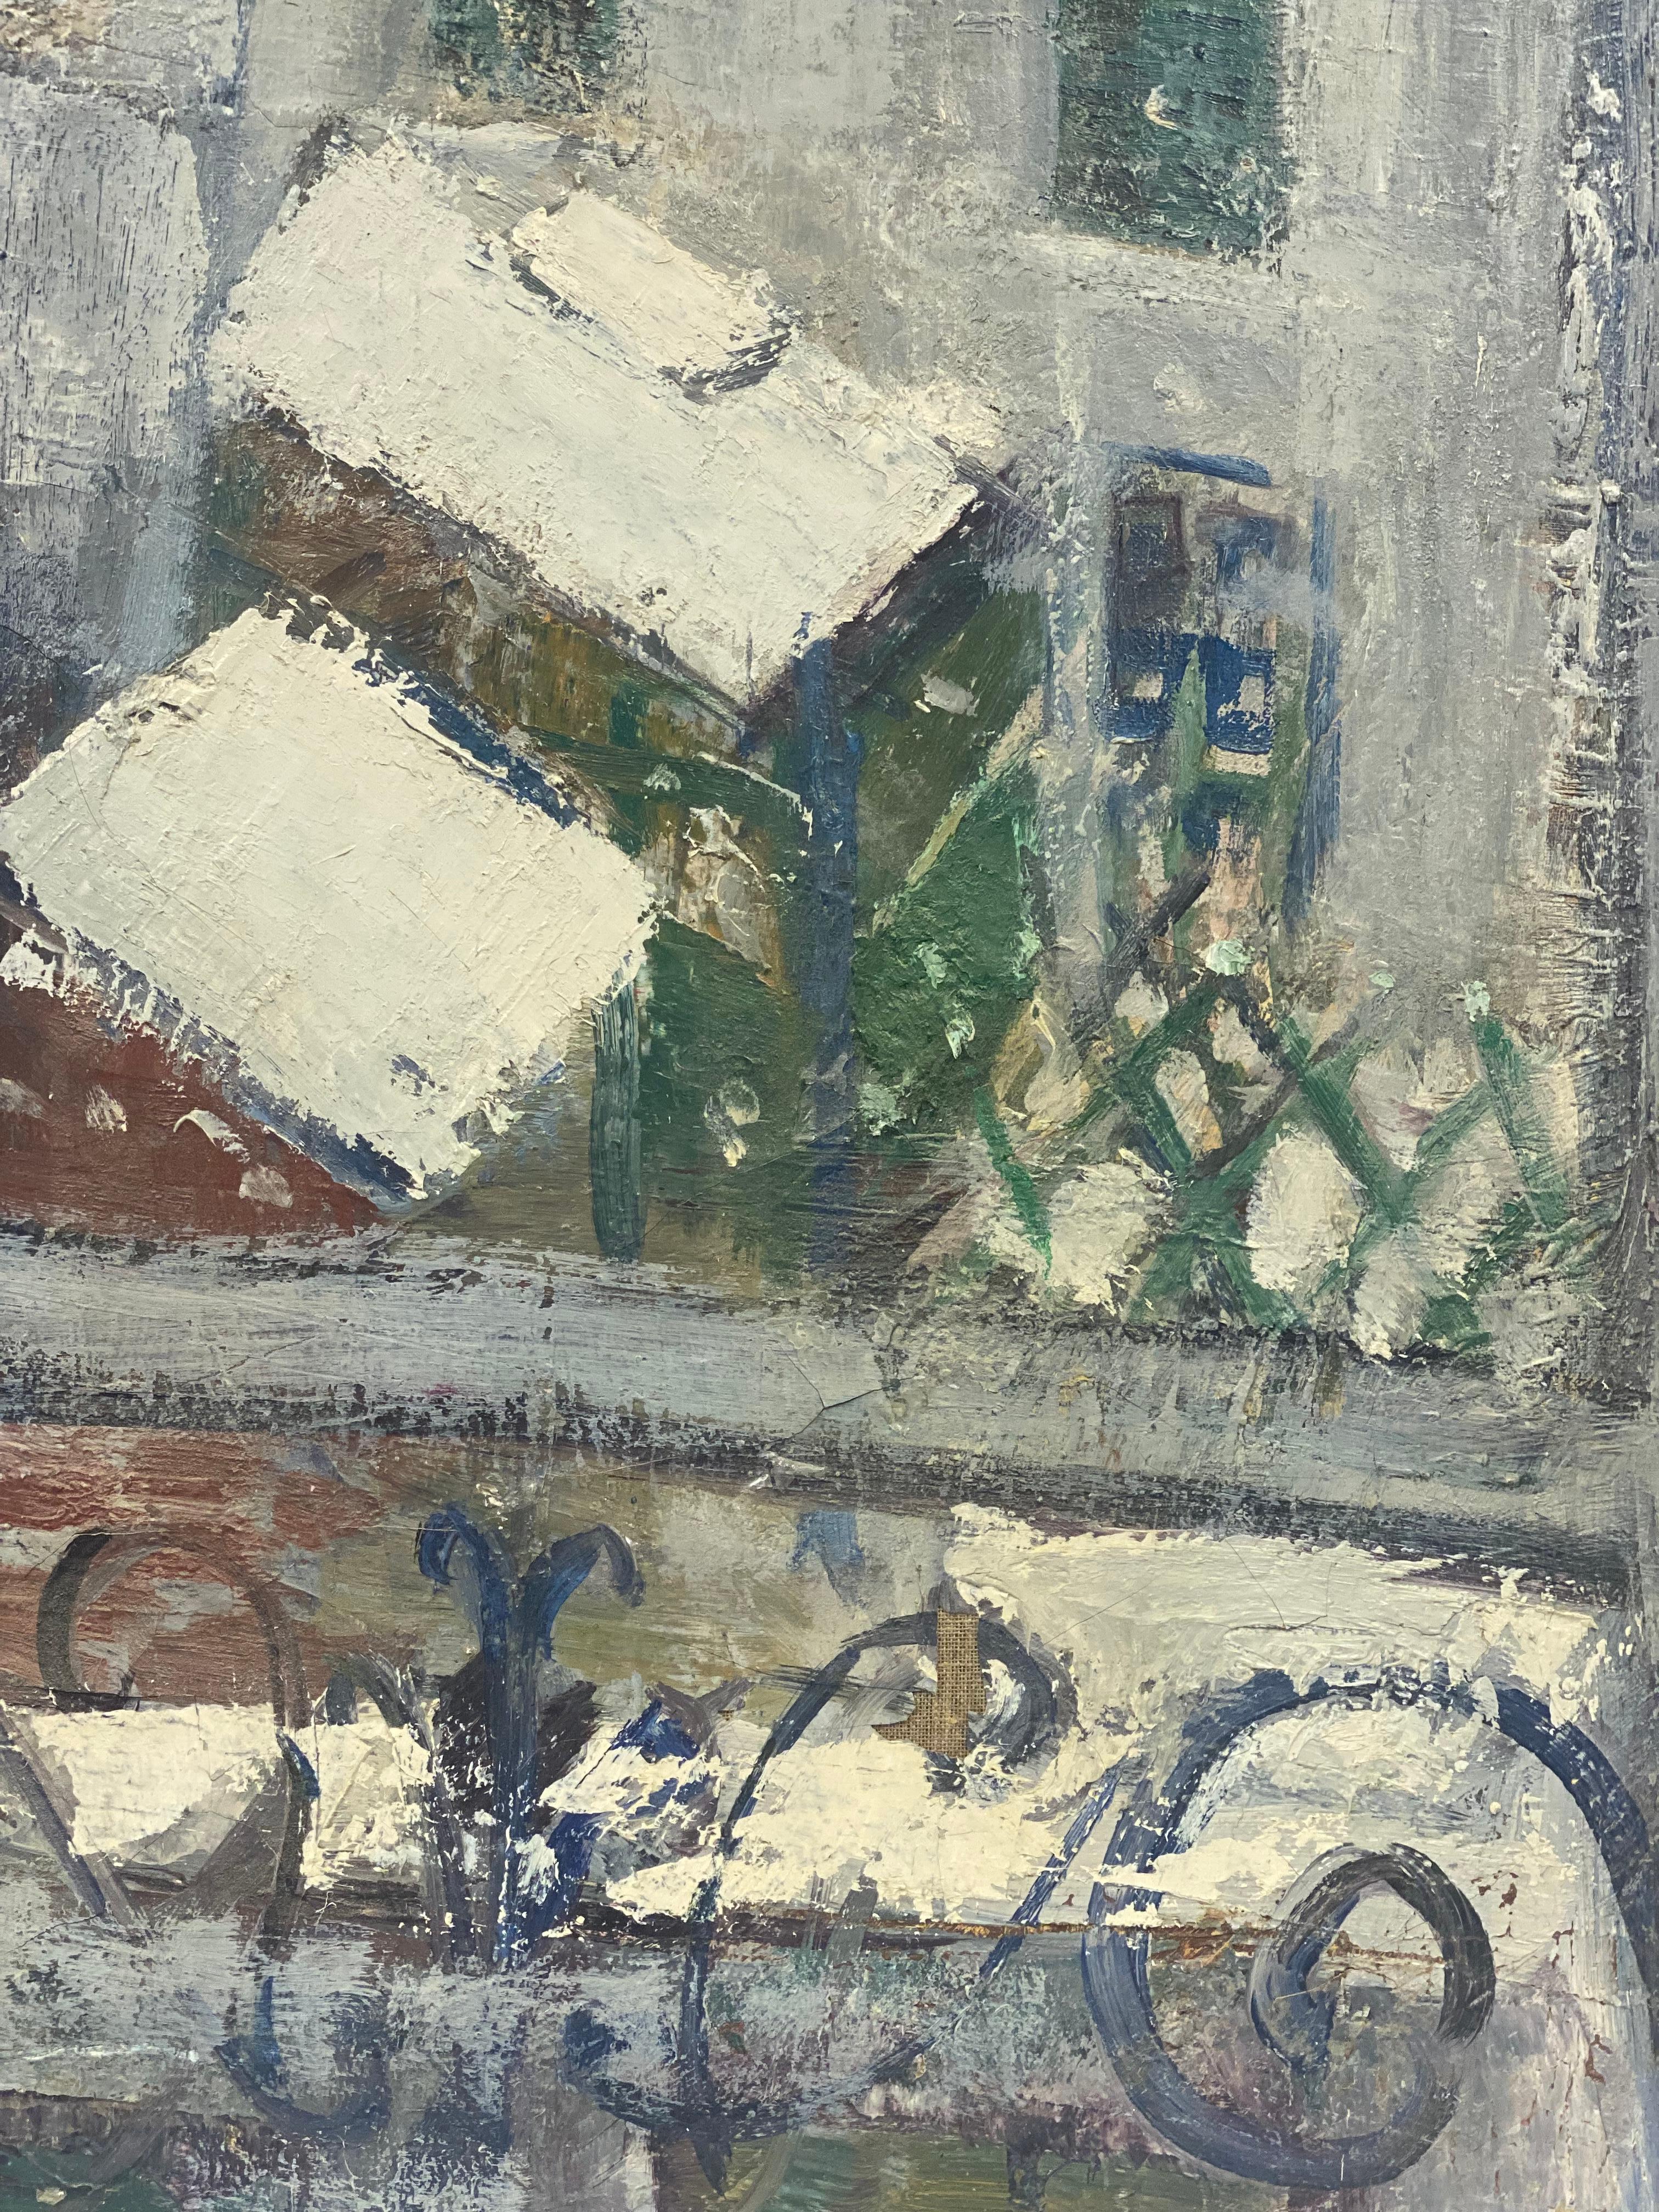 Paris Snow
par Édouard Righetti (1924-2001)

Signé en bas du recto et du verso, période des années 1960

peinture à l'huile sur toile, magnifiquement peinte à l'huile rick thick impasto représentant cette vue hivernale de l'intérieur de la pièce.